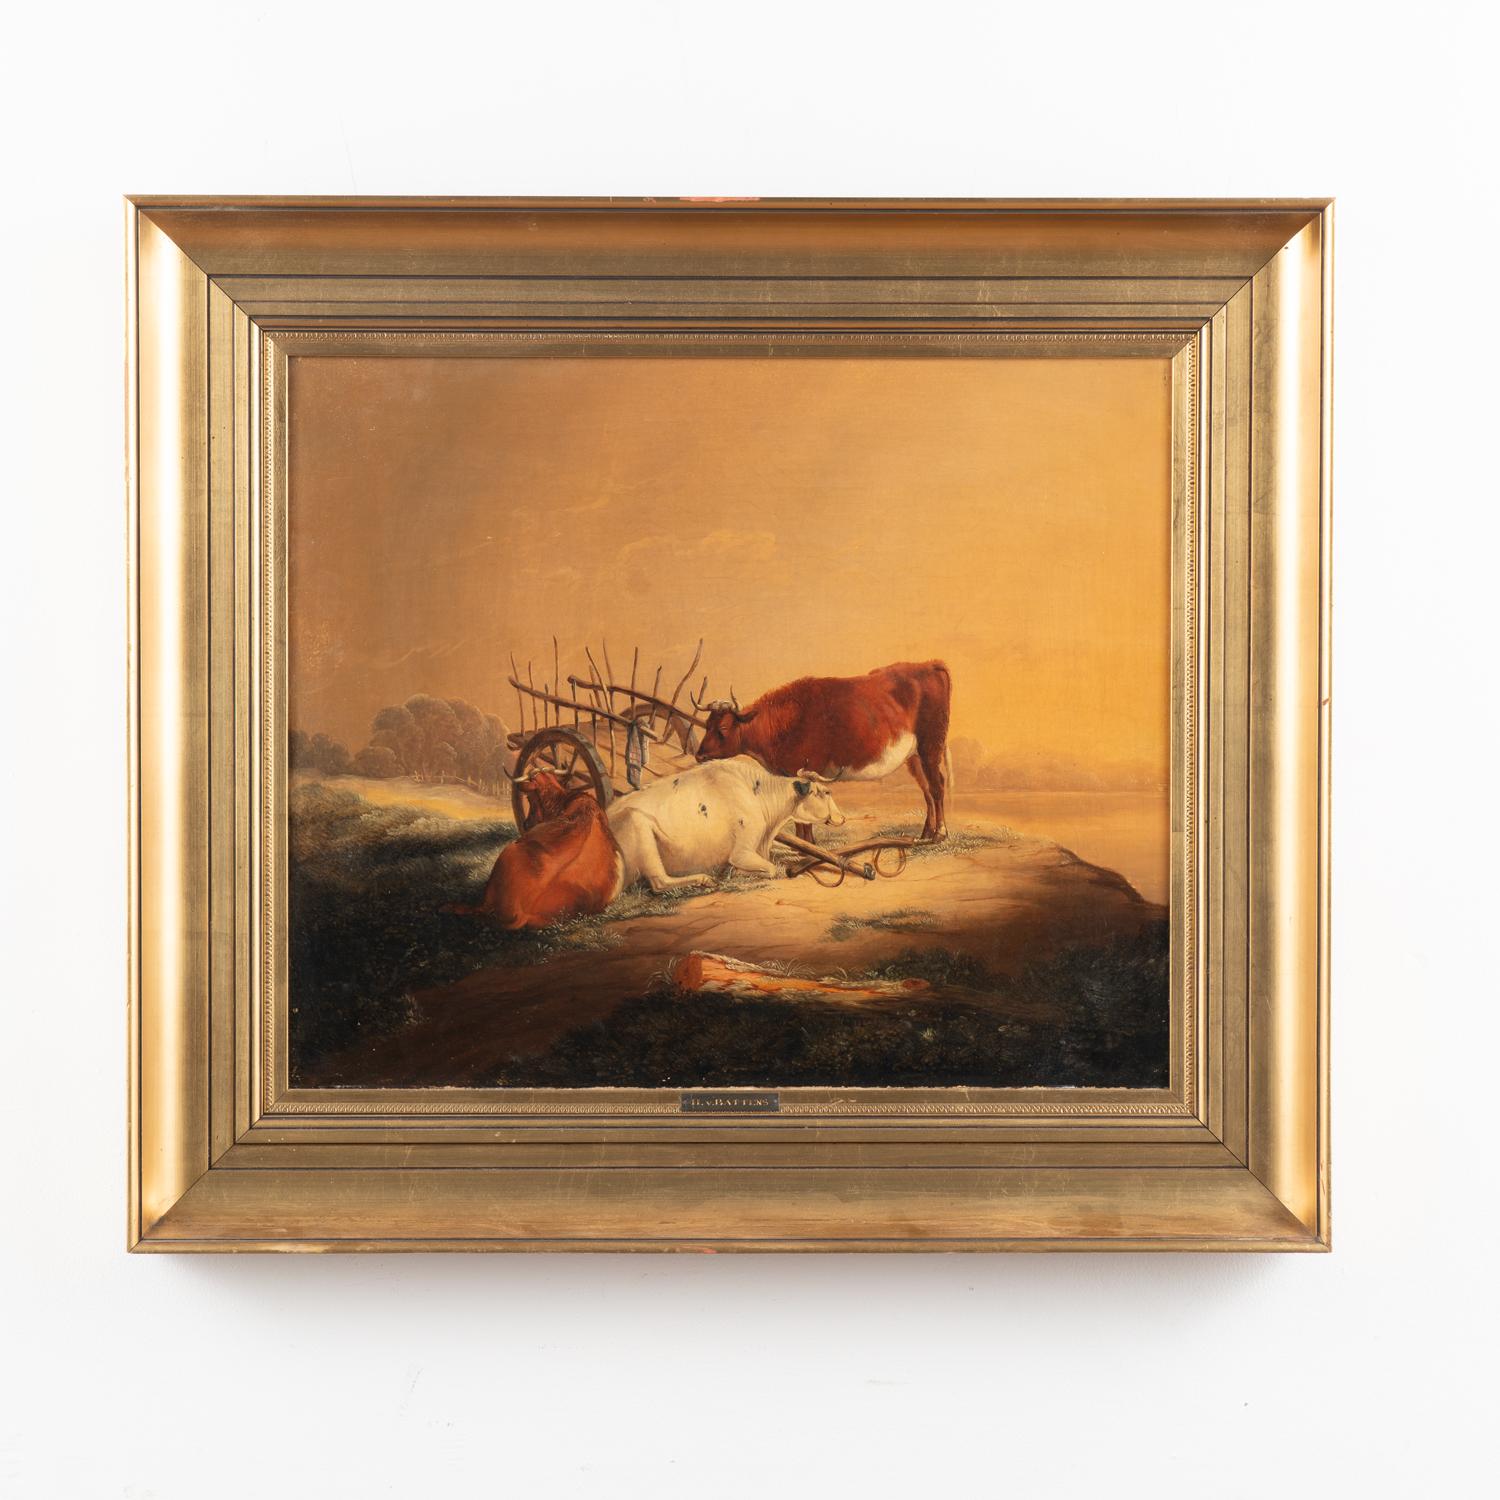 Peinture originale de paysage à l'huile sur toile représentant trois vaches couchées à côté d'une charrette et d'un joug. La lueur dorée donne l'impression que le crépuscule approche.
Artistics attribué à H.V.I. Battens
Toile en état d'origine lié à